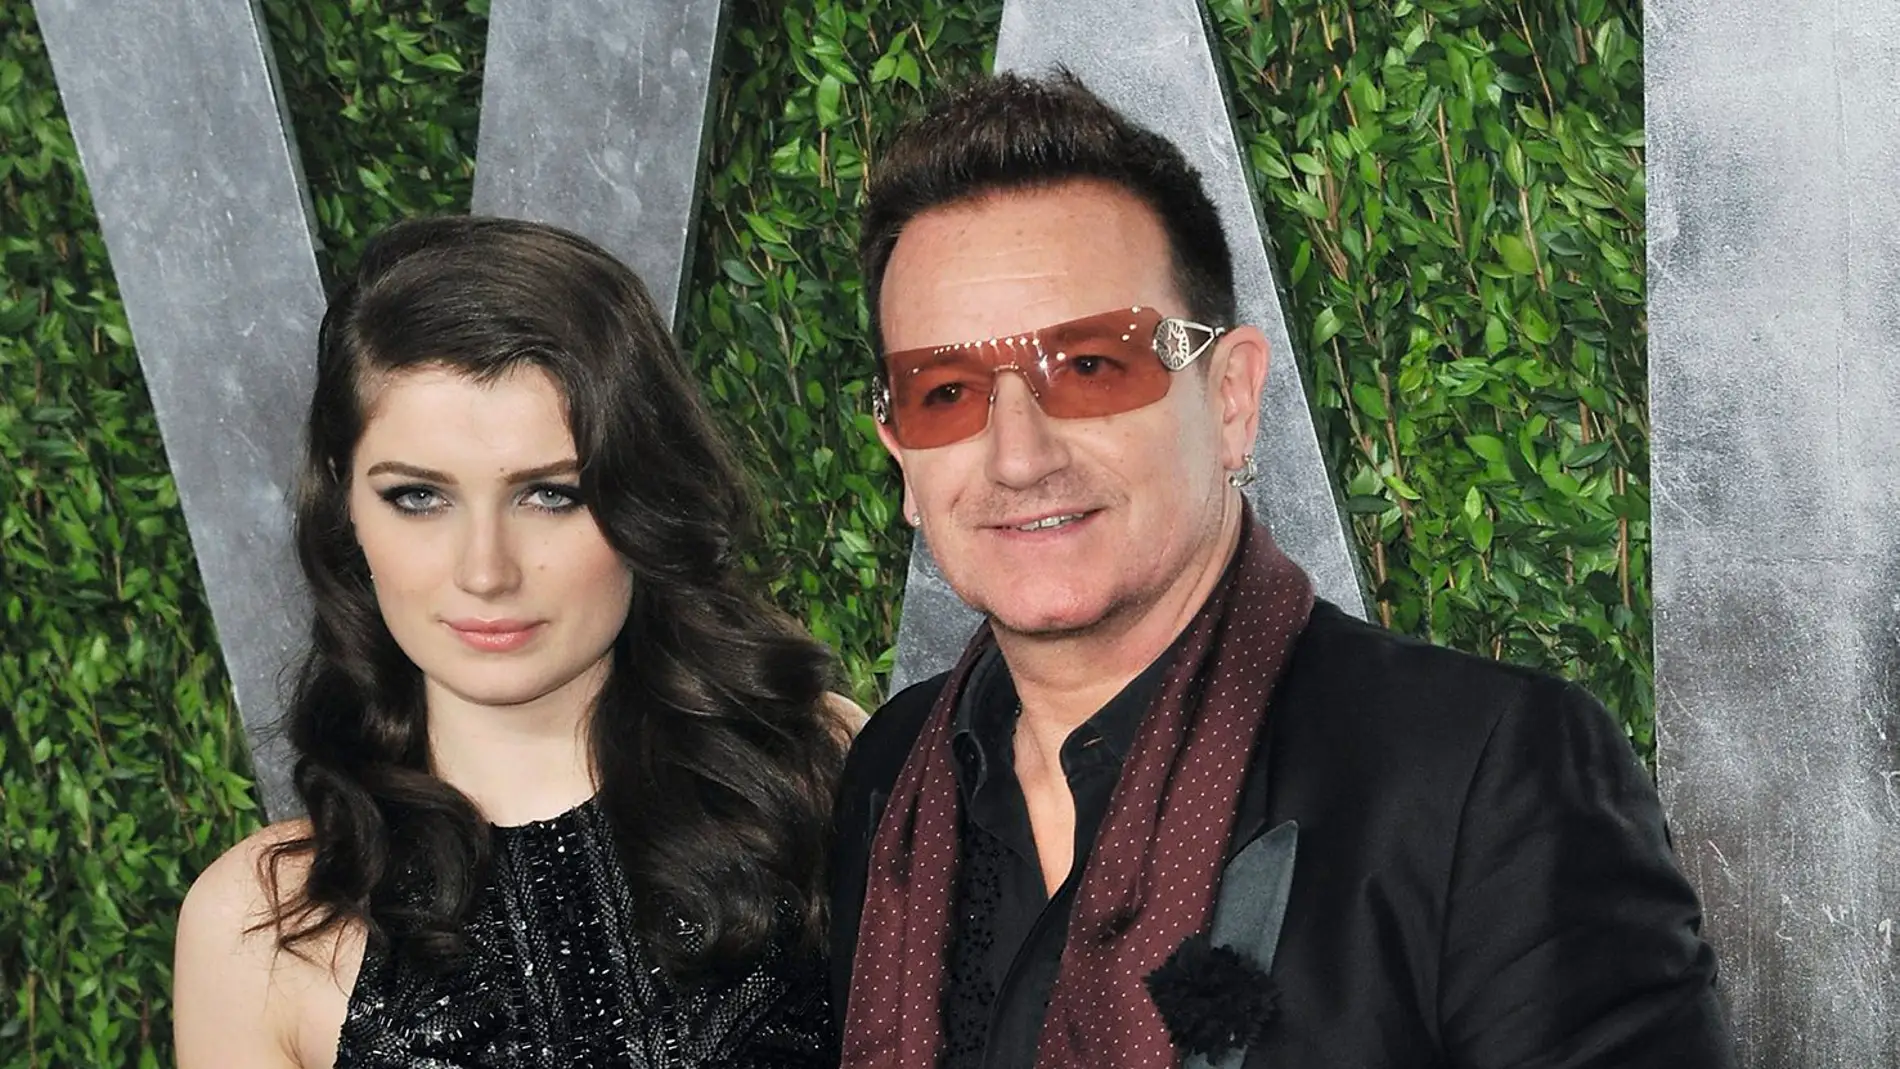 Eve Hewson, la explosiva hija de Bono de U2